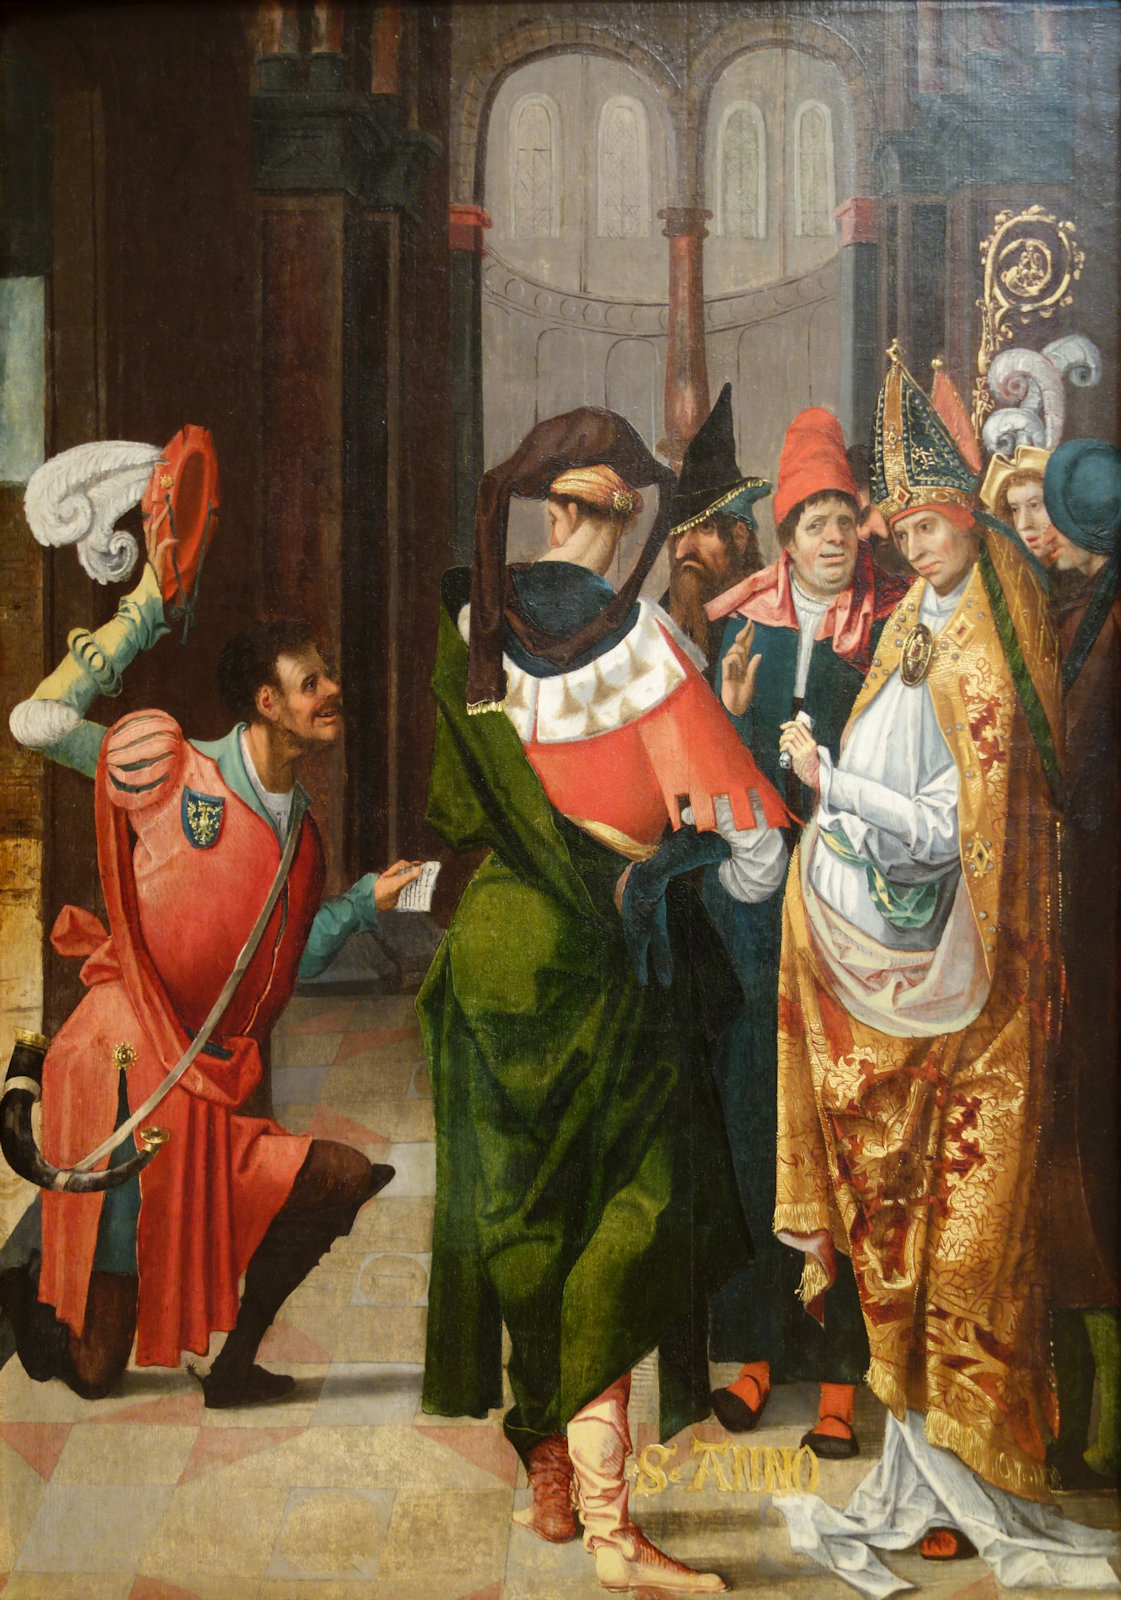 Meister des Agilolf- und Anno-Altars: Anno erhält den Siegberg zur Gründung des Klosters Siegburg, 1520, im Chazen Museum of Art in Madison in Wisconsin in den USA